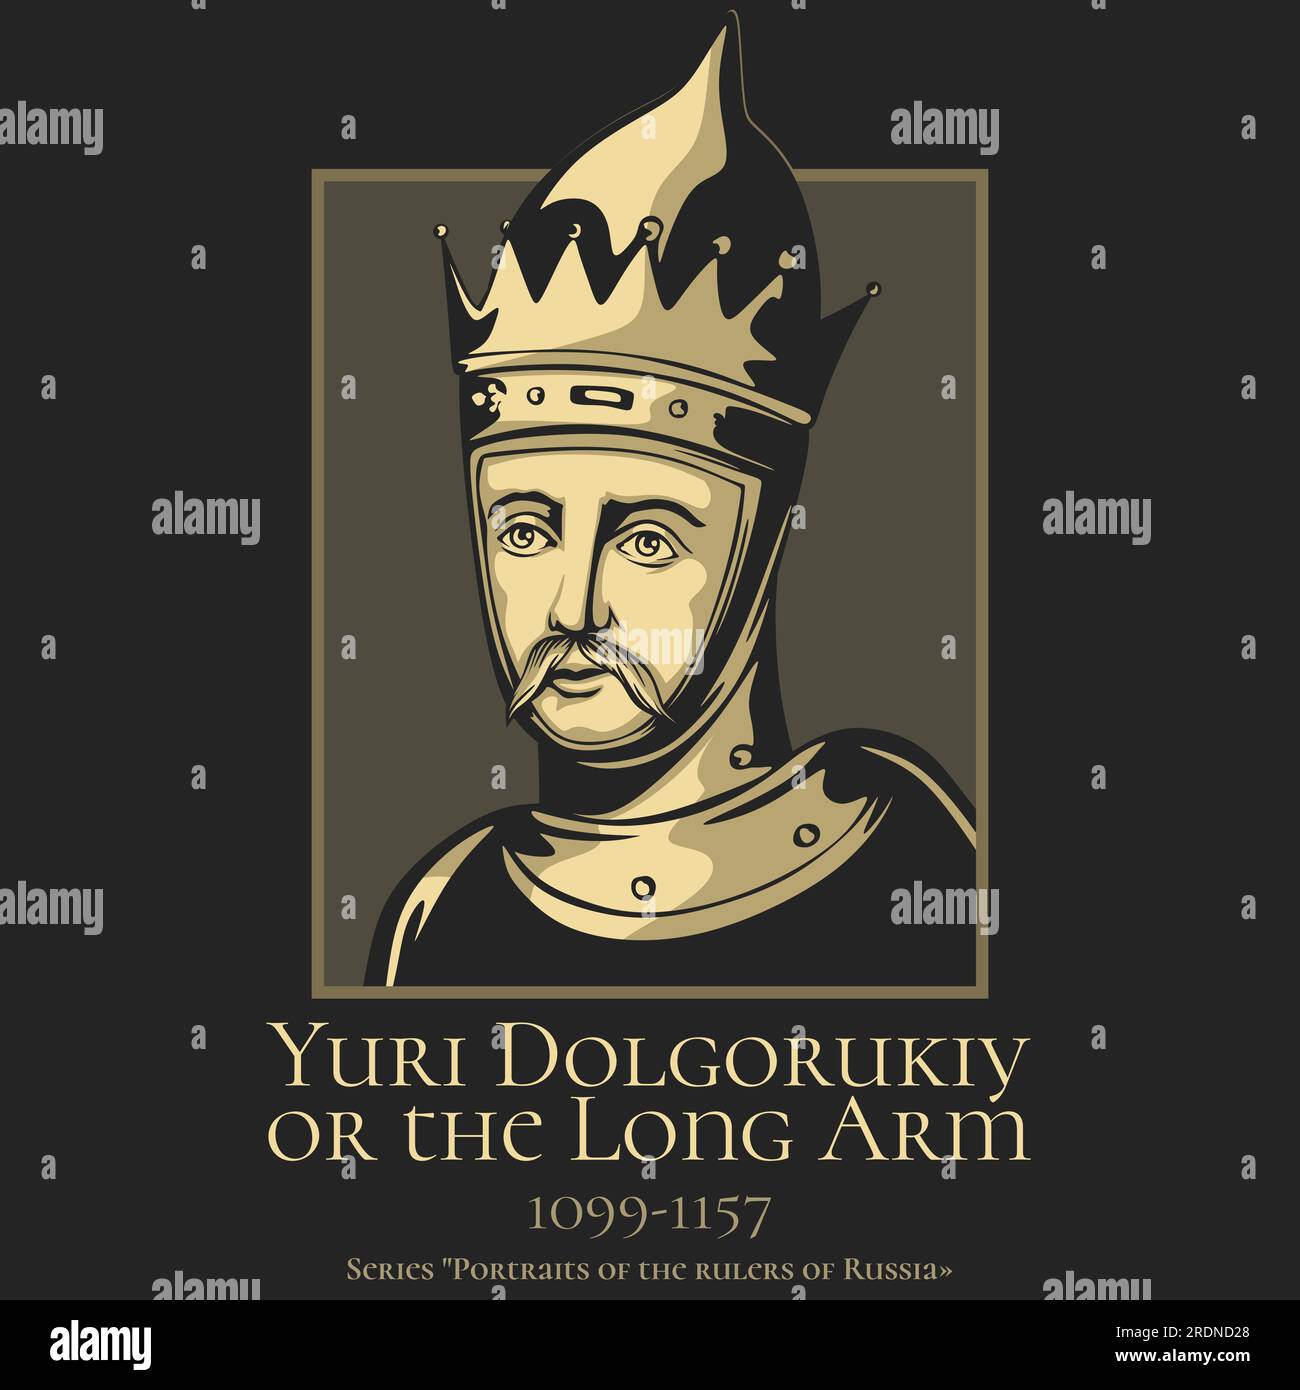 Ritratto dei governanti della Russia. Yuri i Vladimirovich (Yuri Dolgorukiy o il braccio lungo, 1099-1157) è stato un principe Rurikid. Illustrazione Vettoriale